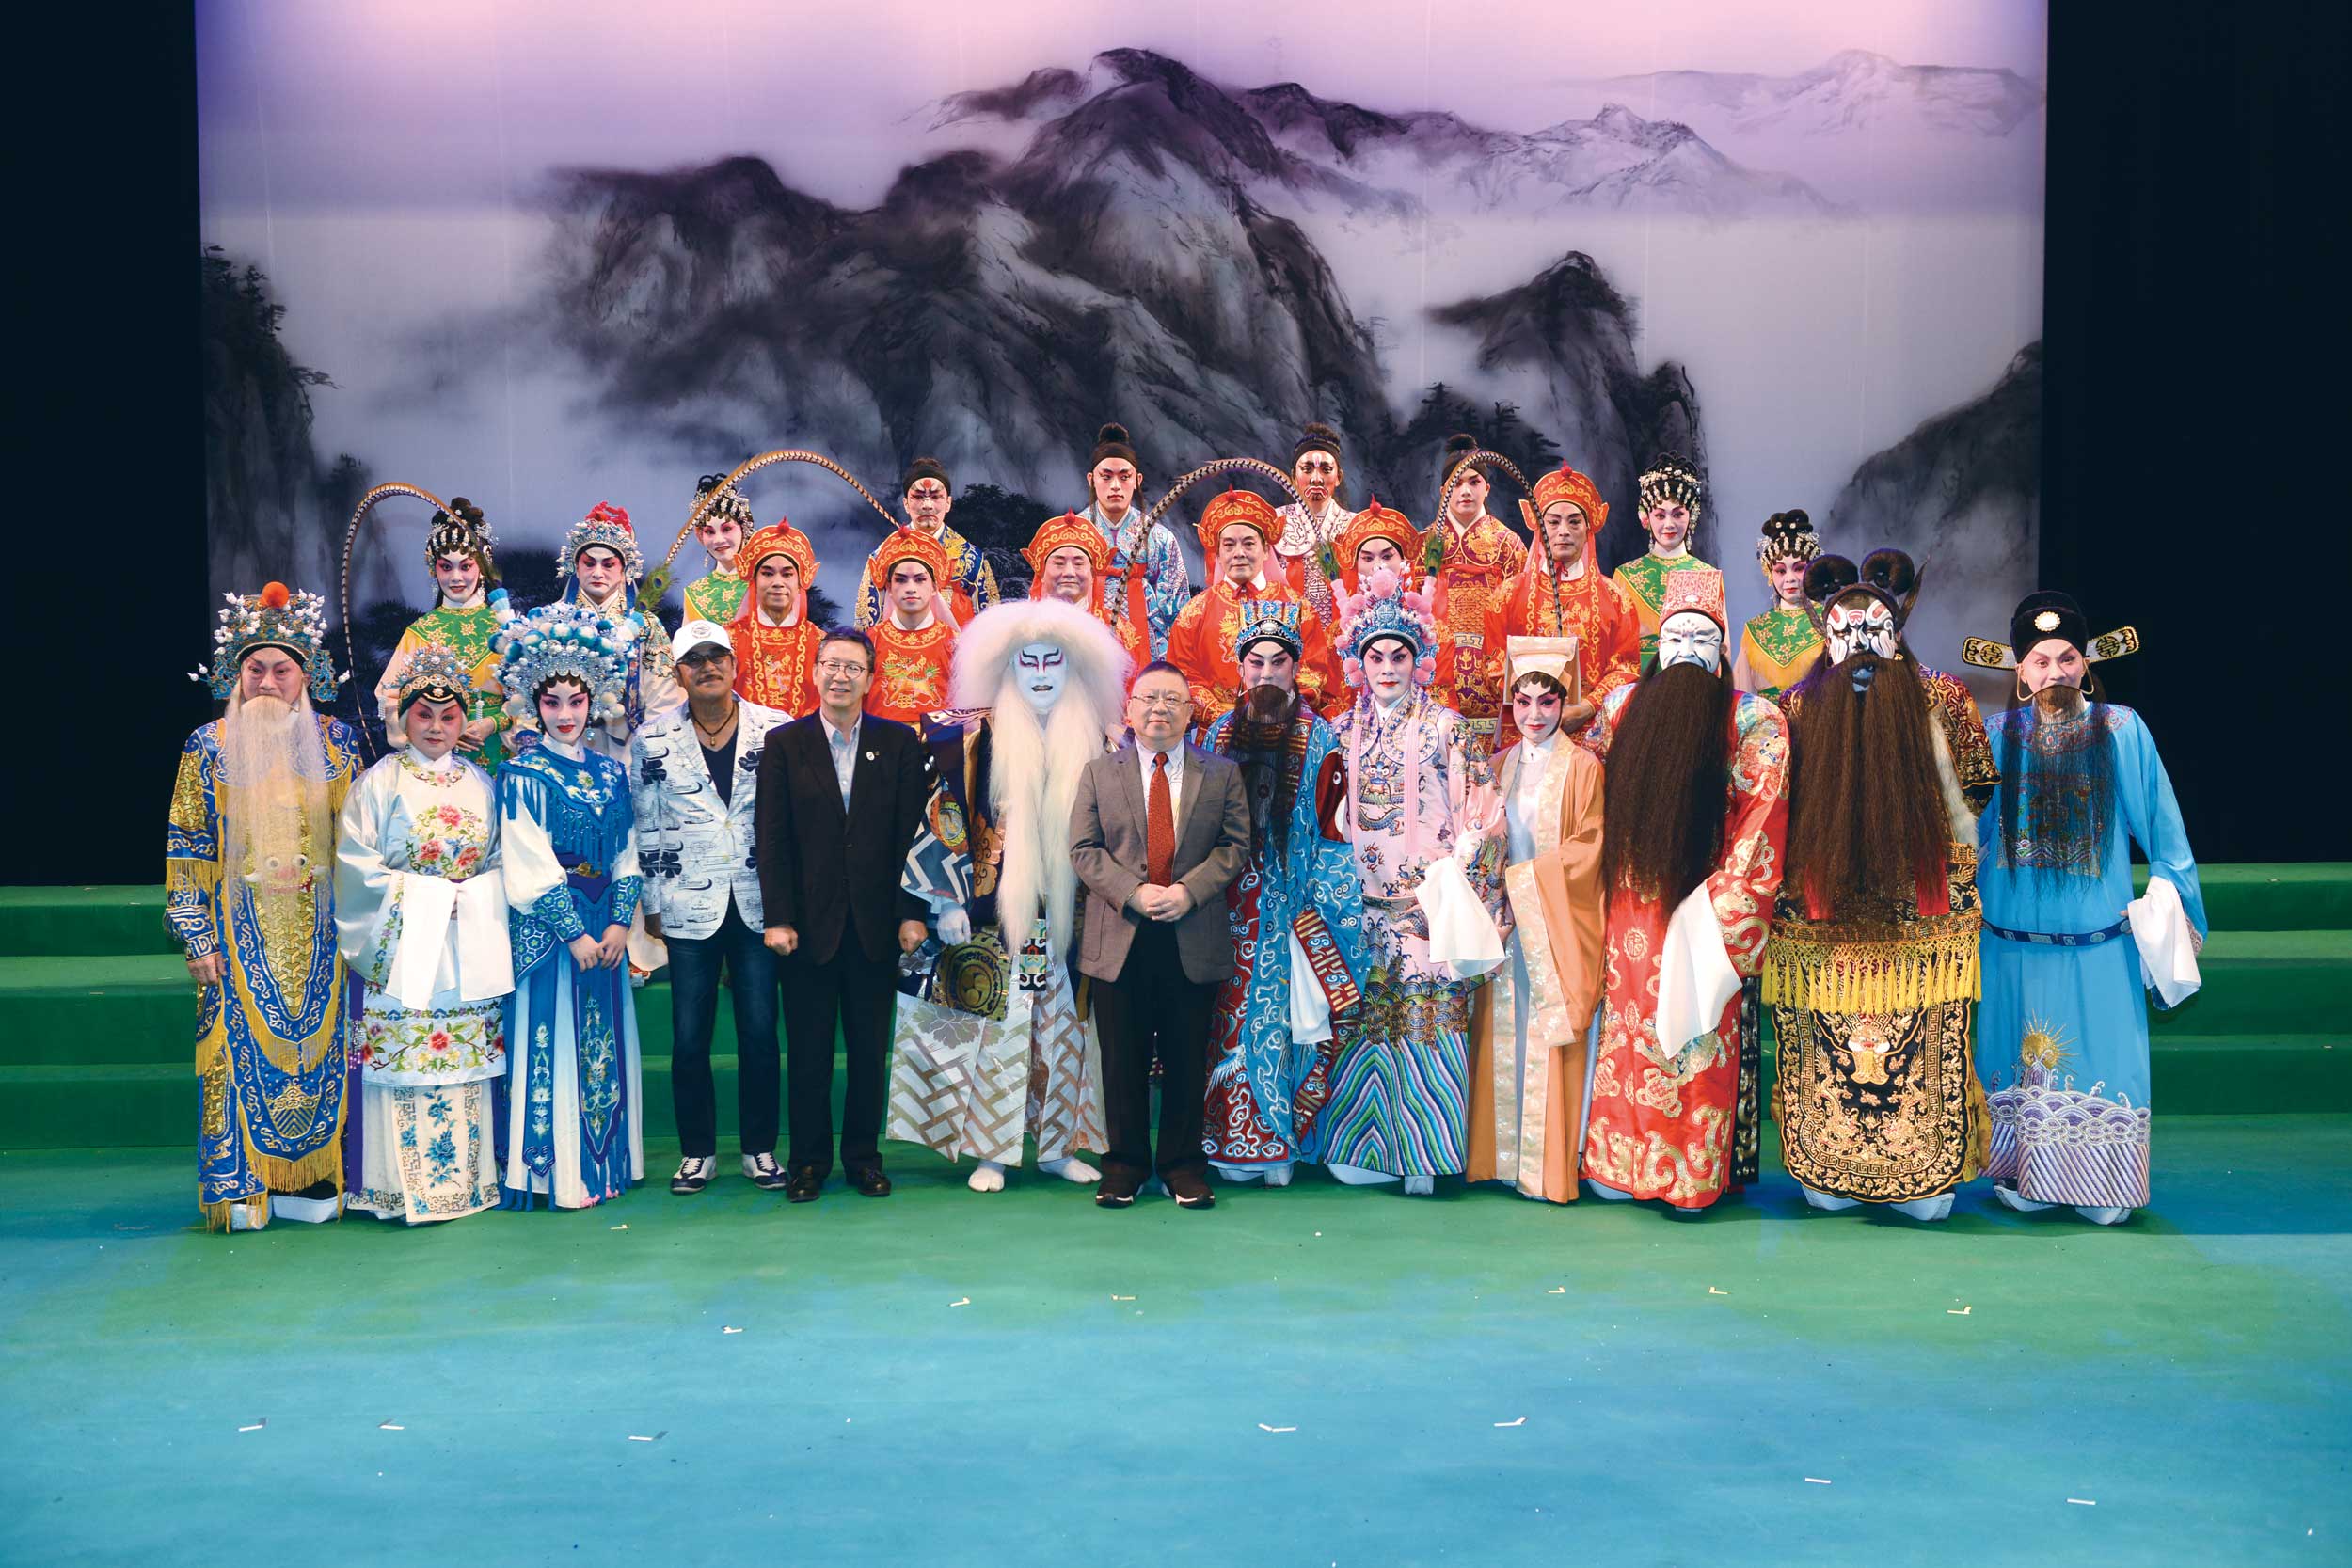 中港粵劇紅伶在日本聚首一堂，完美演繹中國粵劇藝術，精湛表演讓日本觀眾大開眼界，掌聲不絕。香港藝術界及戲曲界於國際舞台上大放異彩，實乃香港之光。